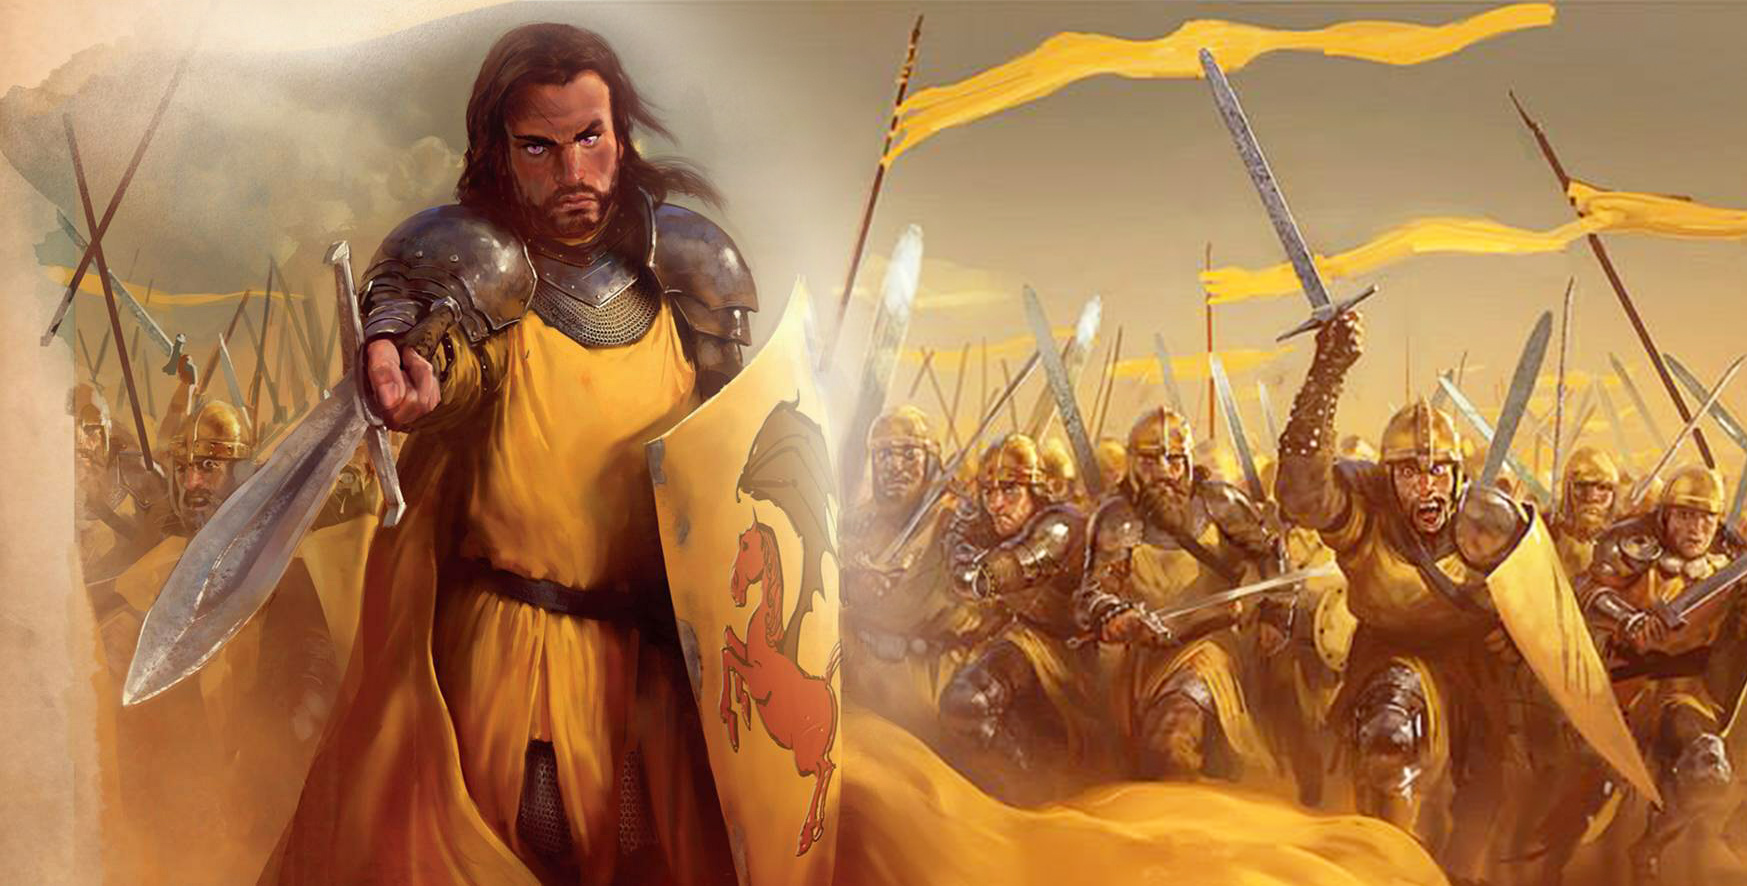 Aegor Rivers liderando a Companhia Dourada, em 219 d.C., durante a Terceira Rebelião Blackfyre.